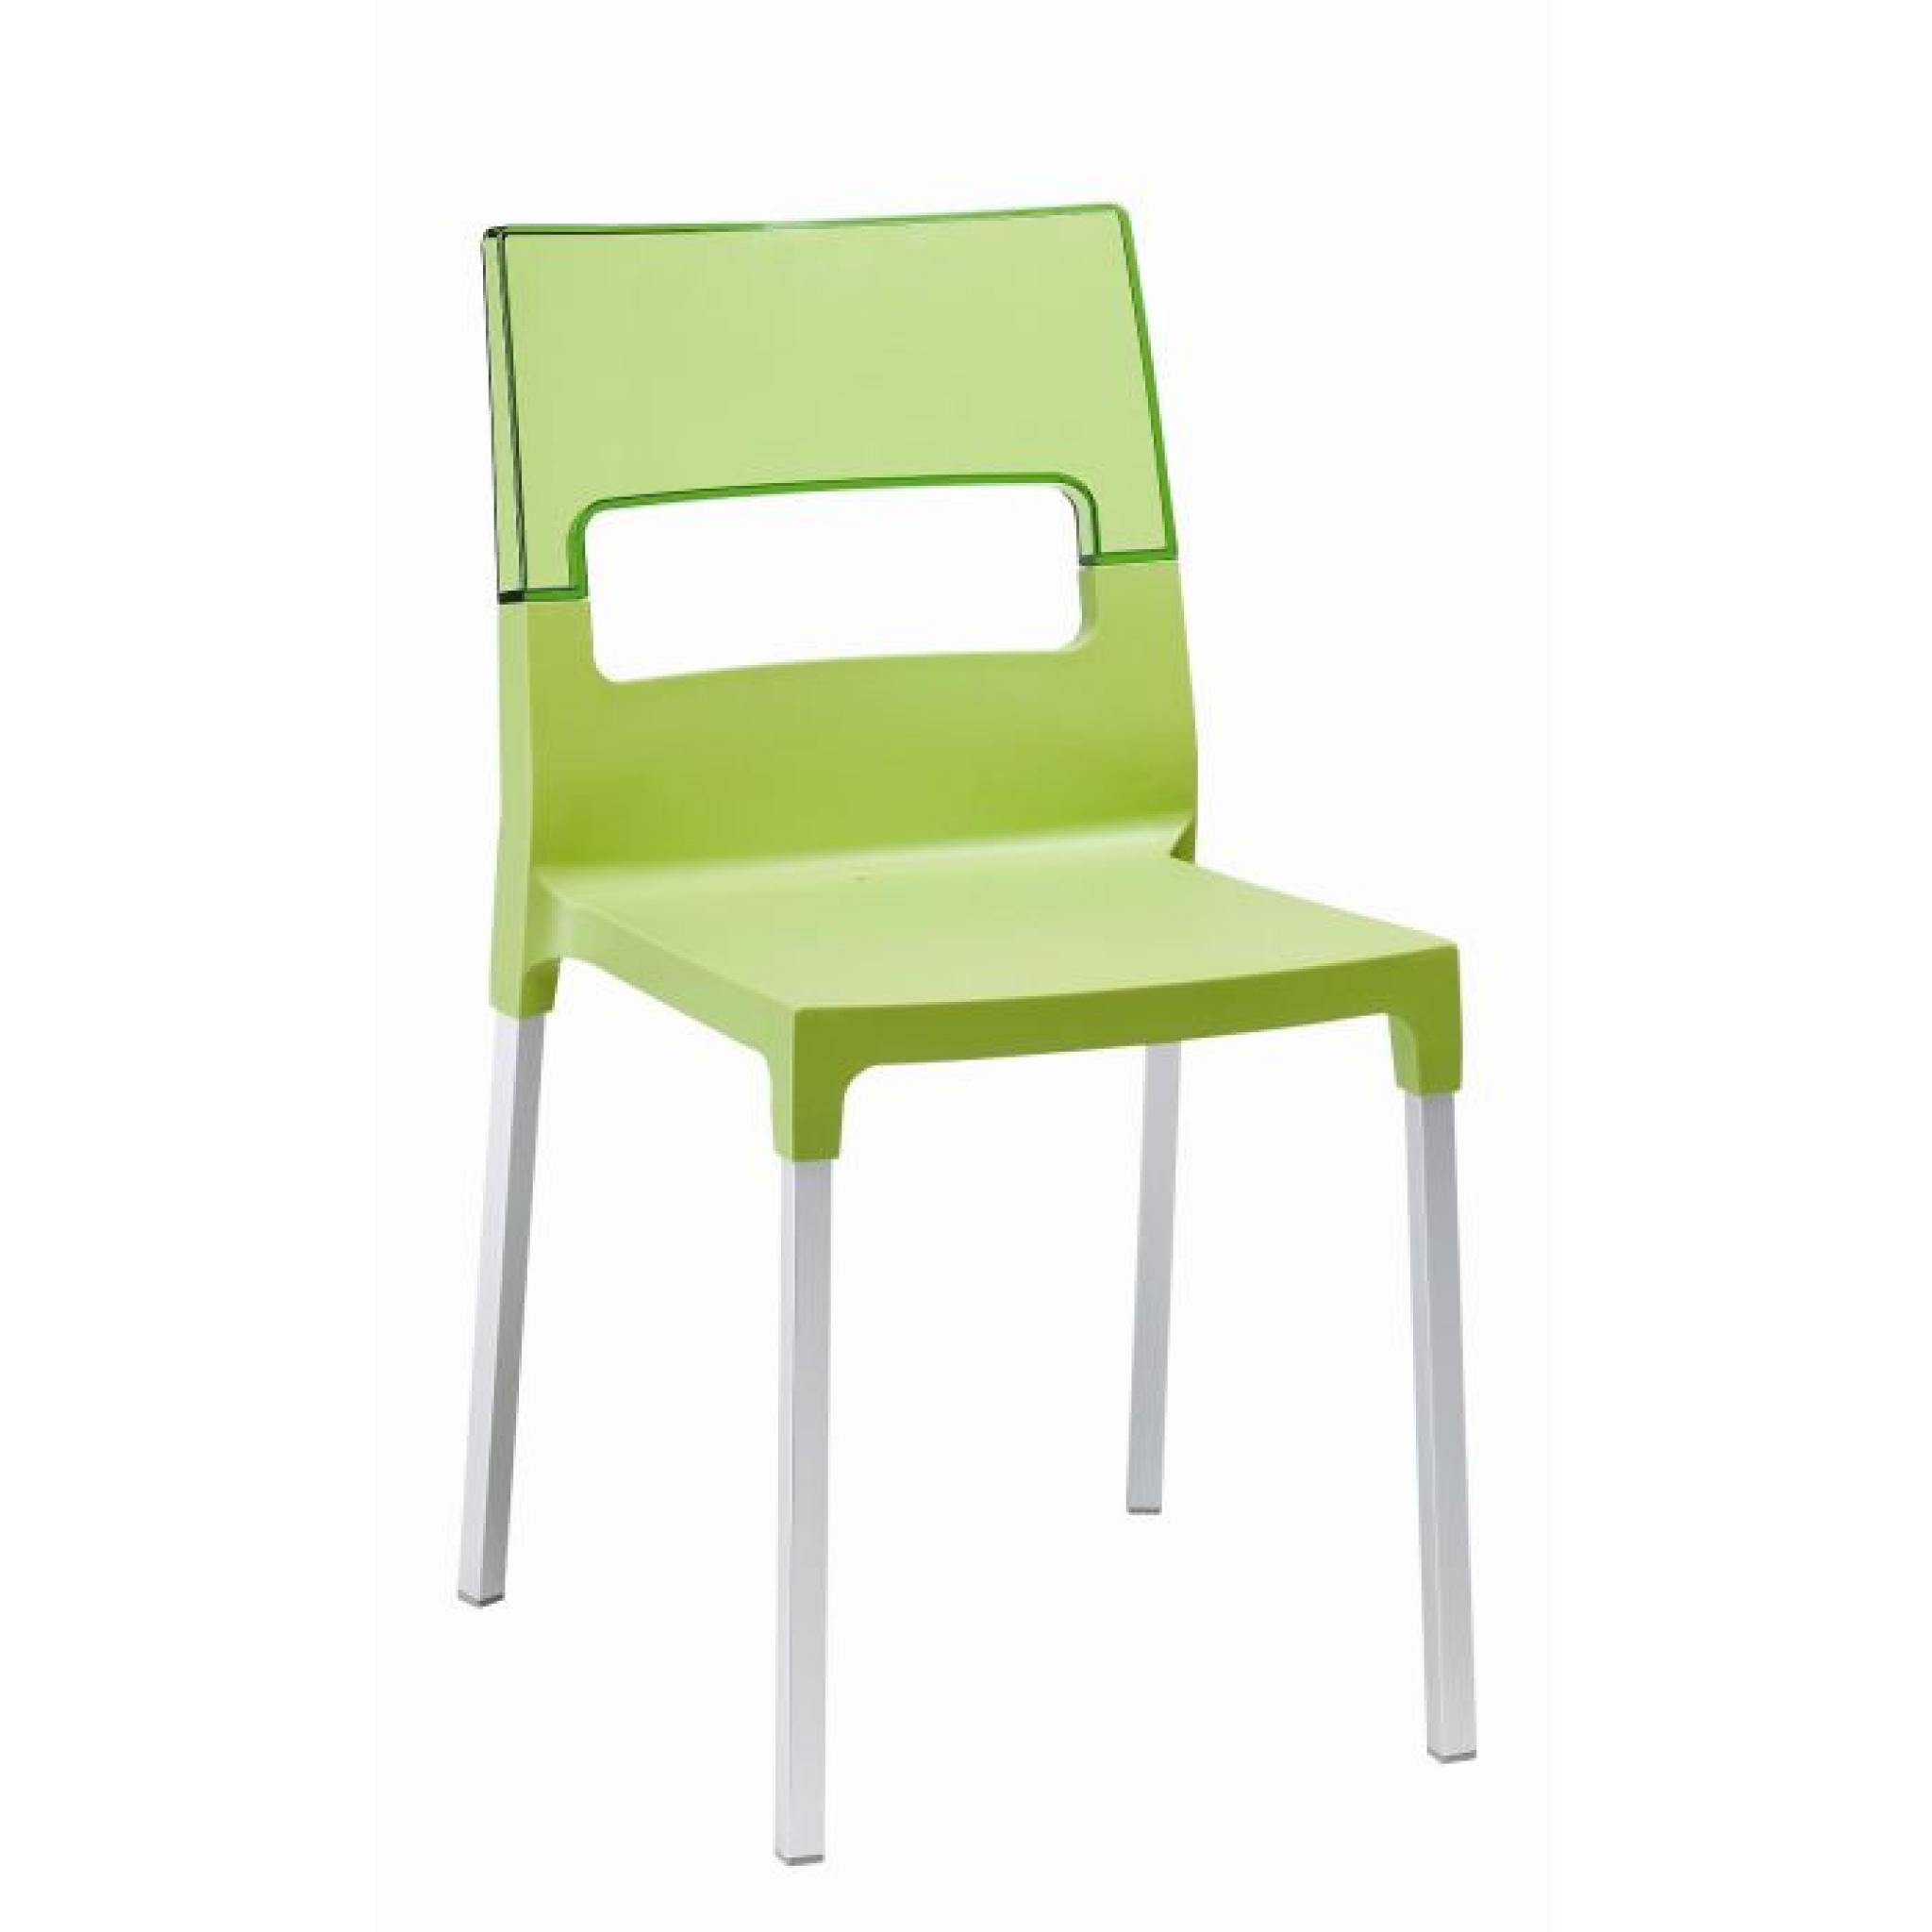 Chaise verte et translucide verte - DIVA vendu …